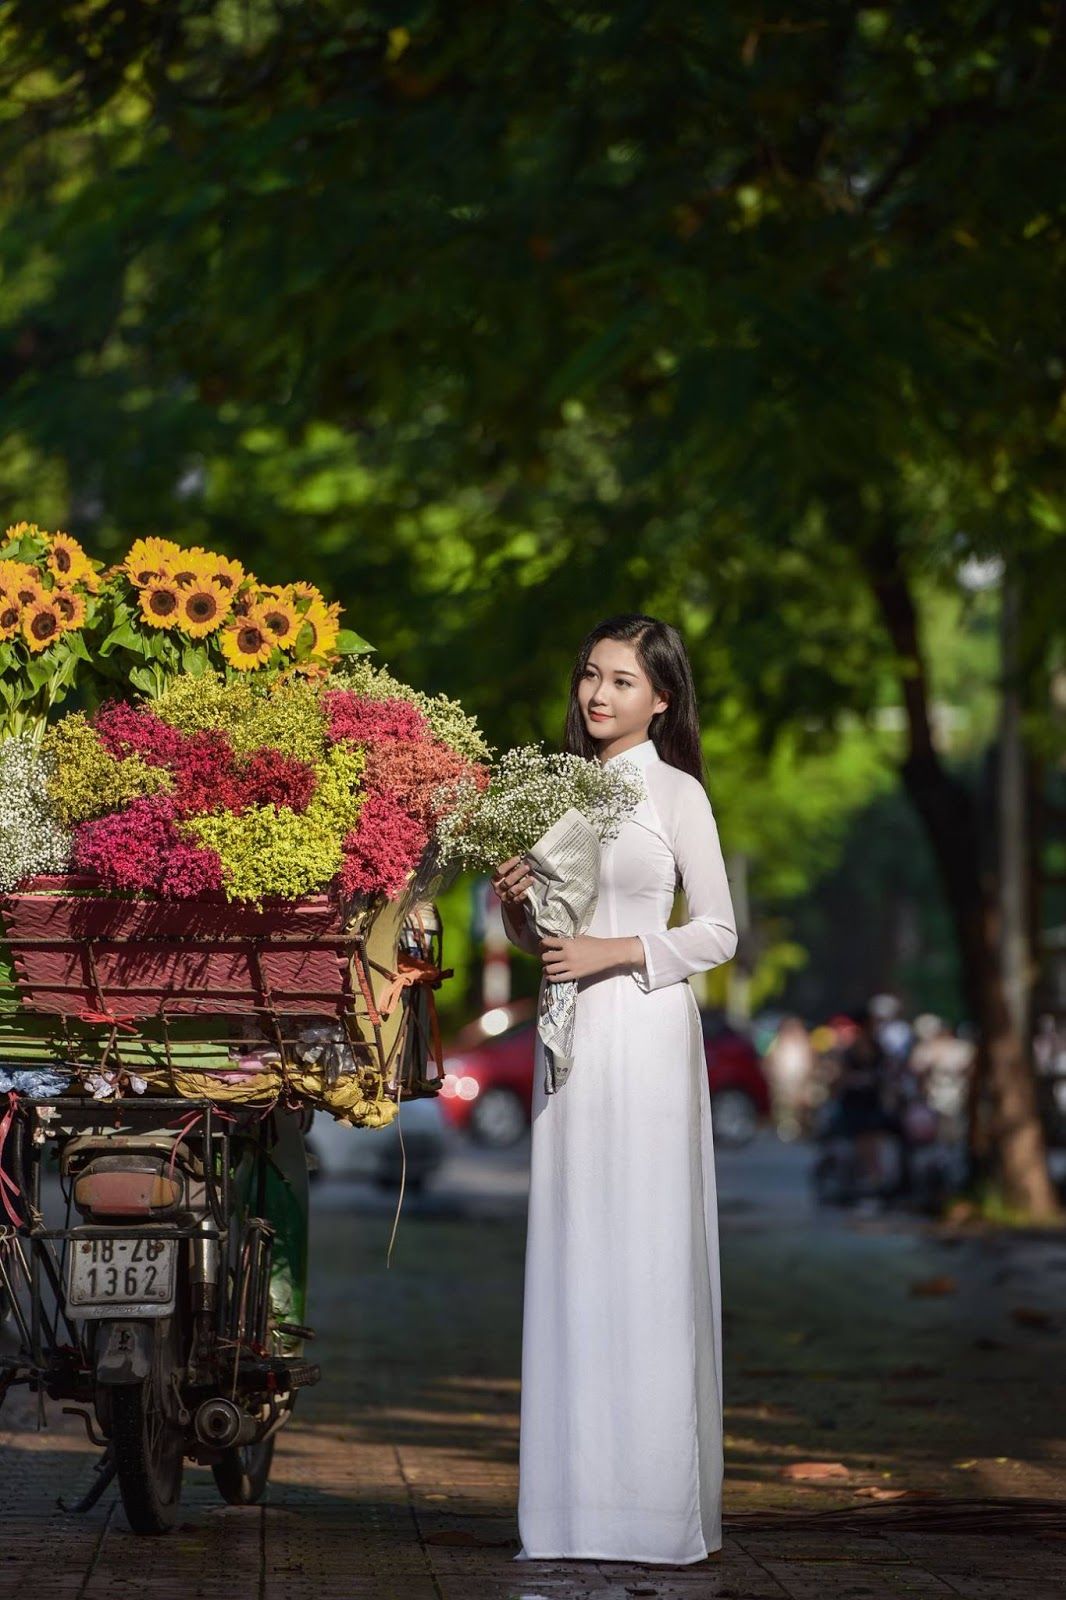 Palatino Studio - Studio chụp hình áo dài nổi tiếng hàng đầu tại Việt Nam